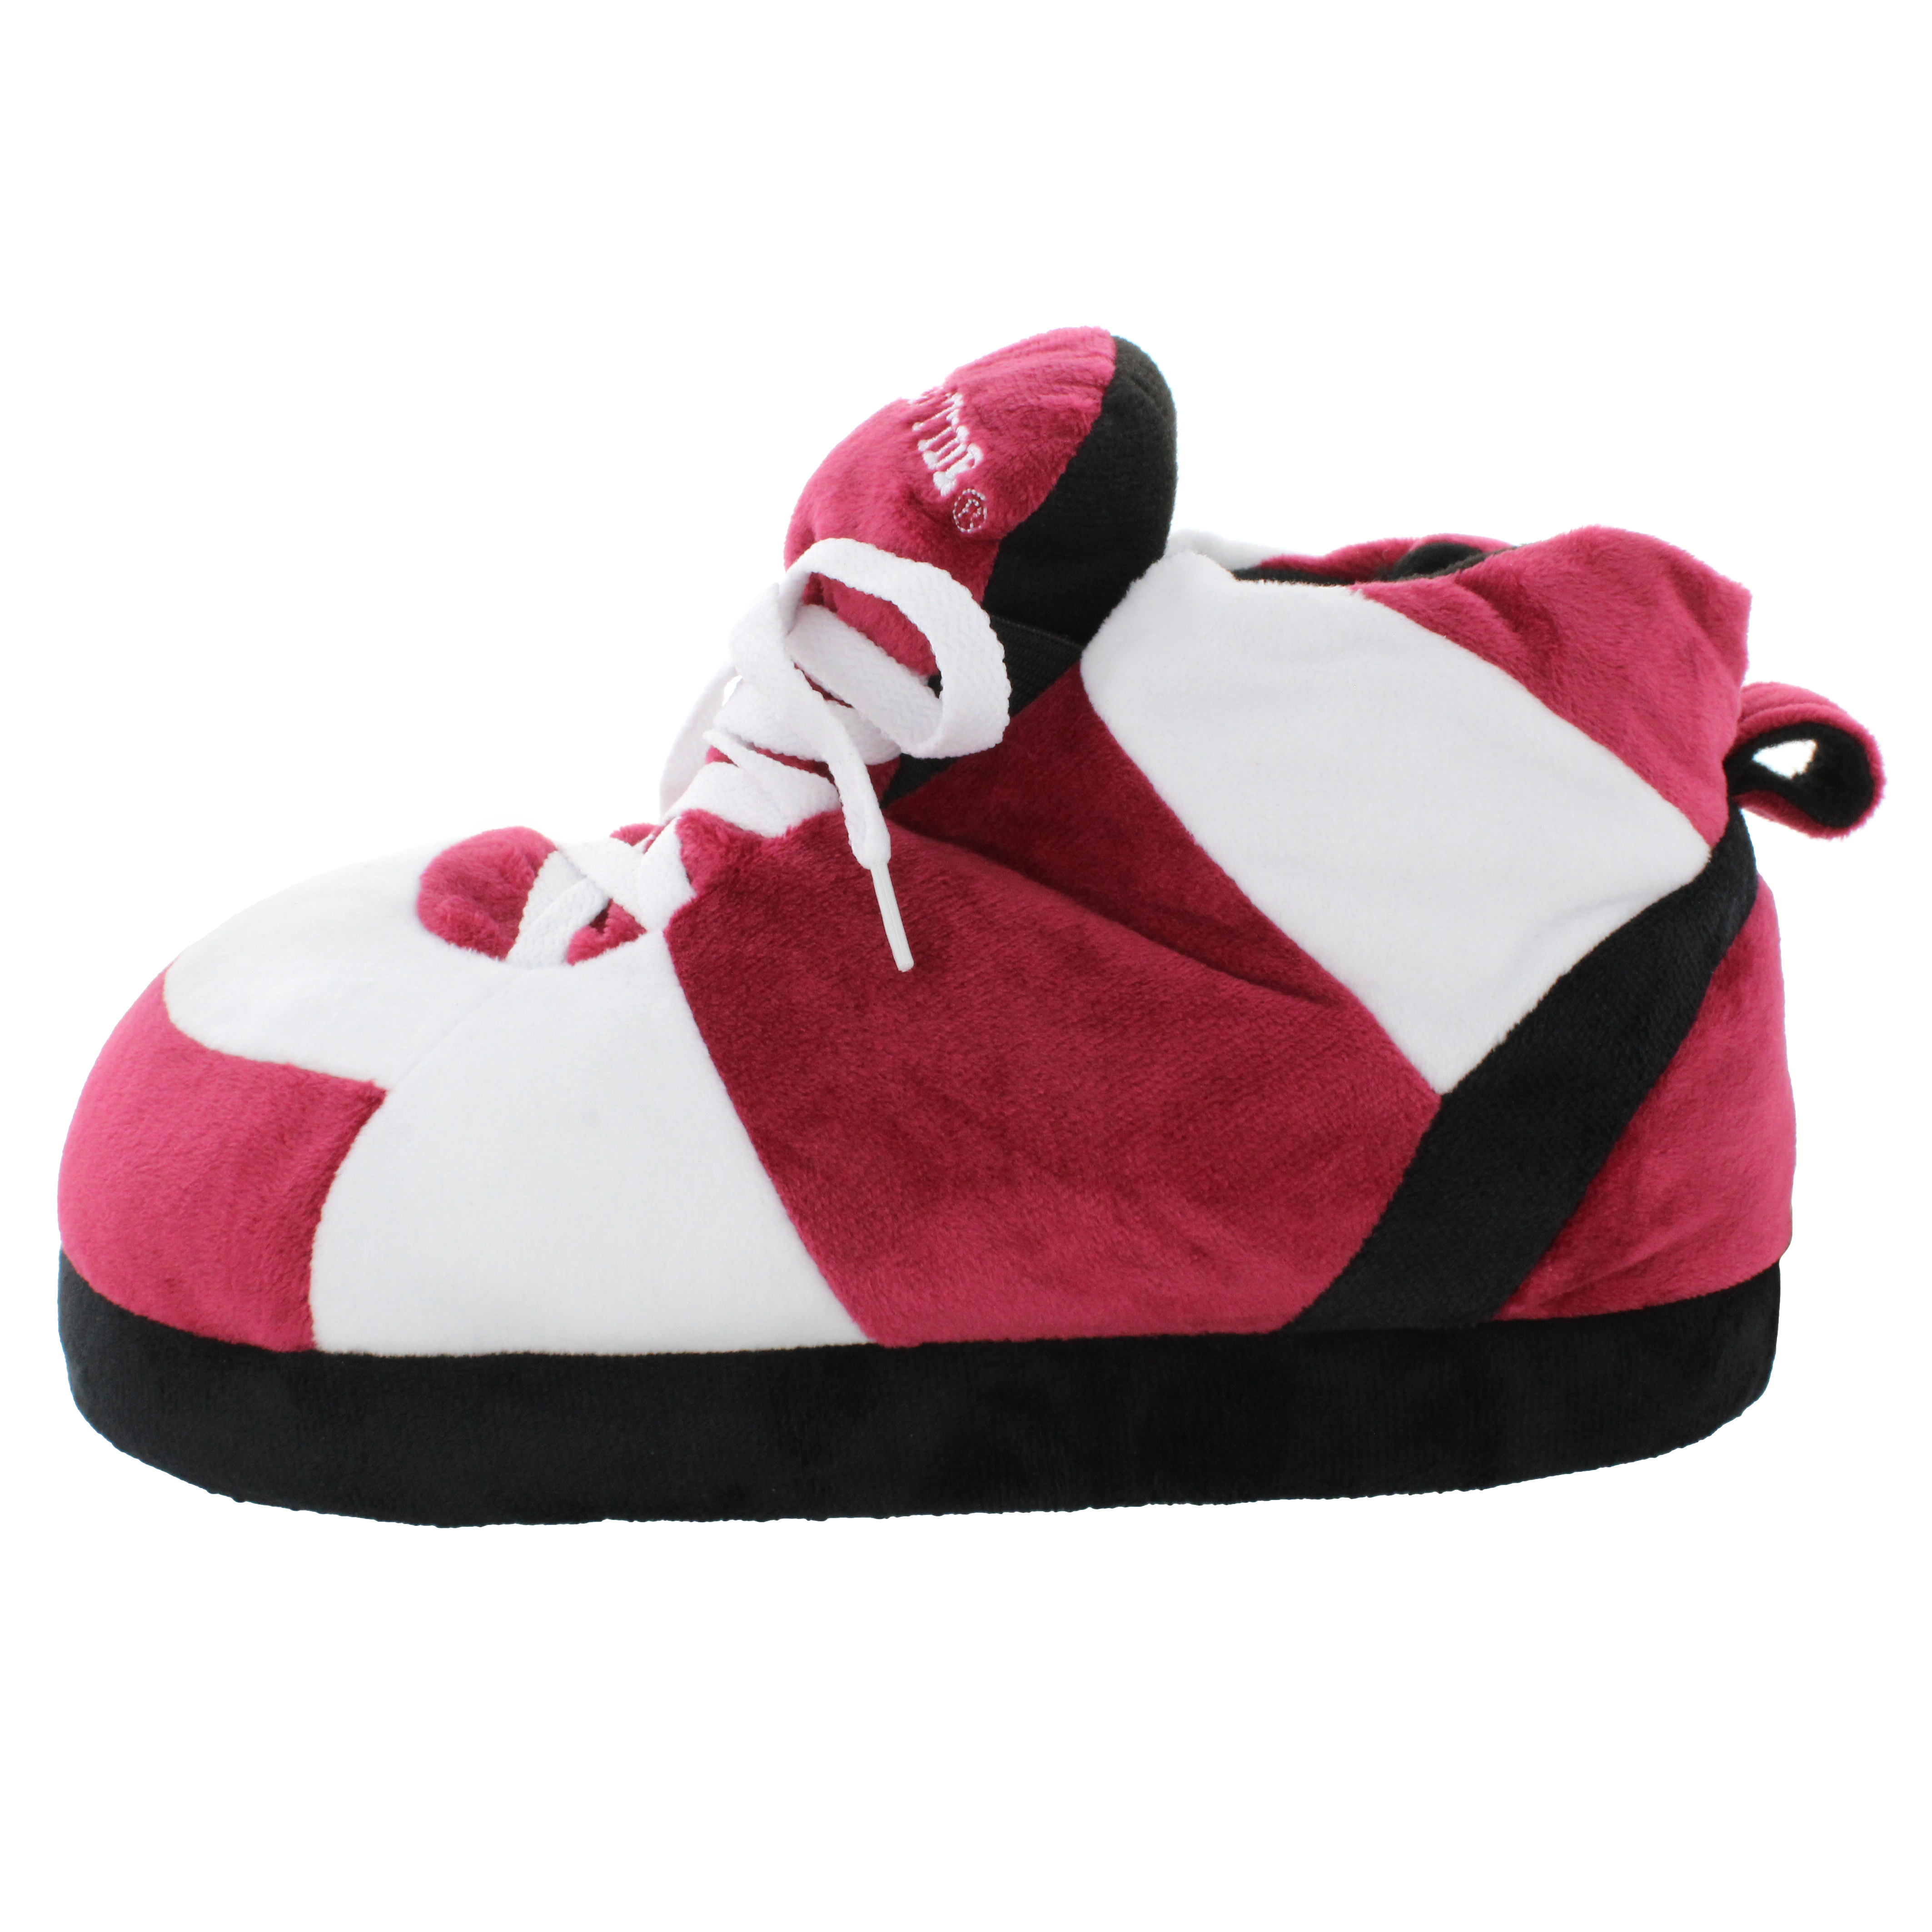 Alabama Crimson Tide Original Comfy Feet Sneaker Slipper, Large - image 4 of 8